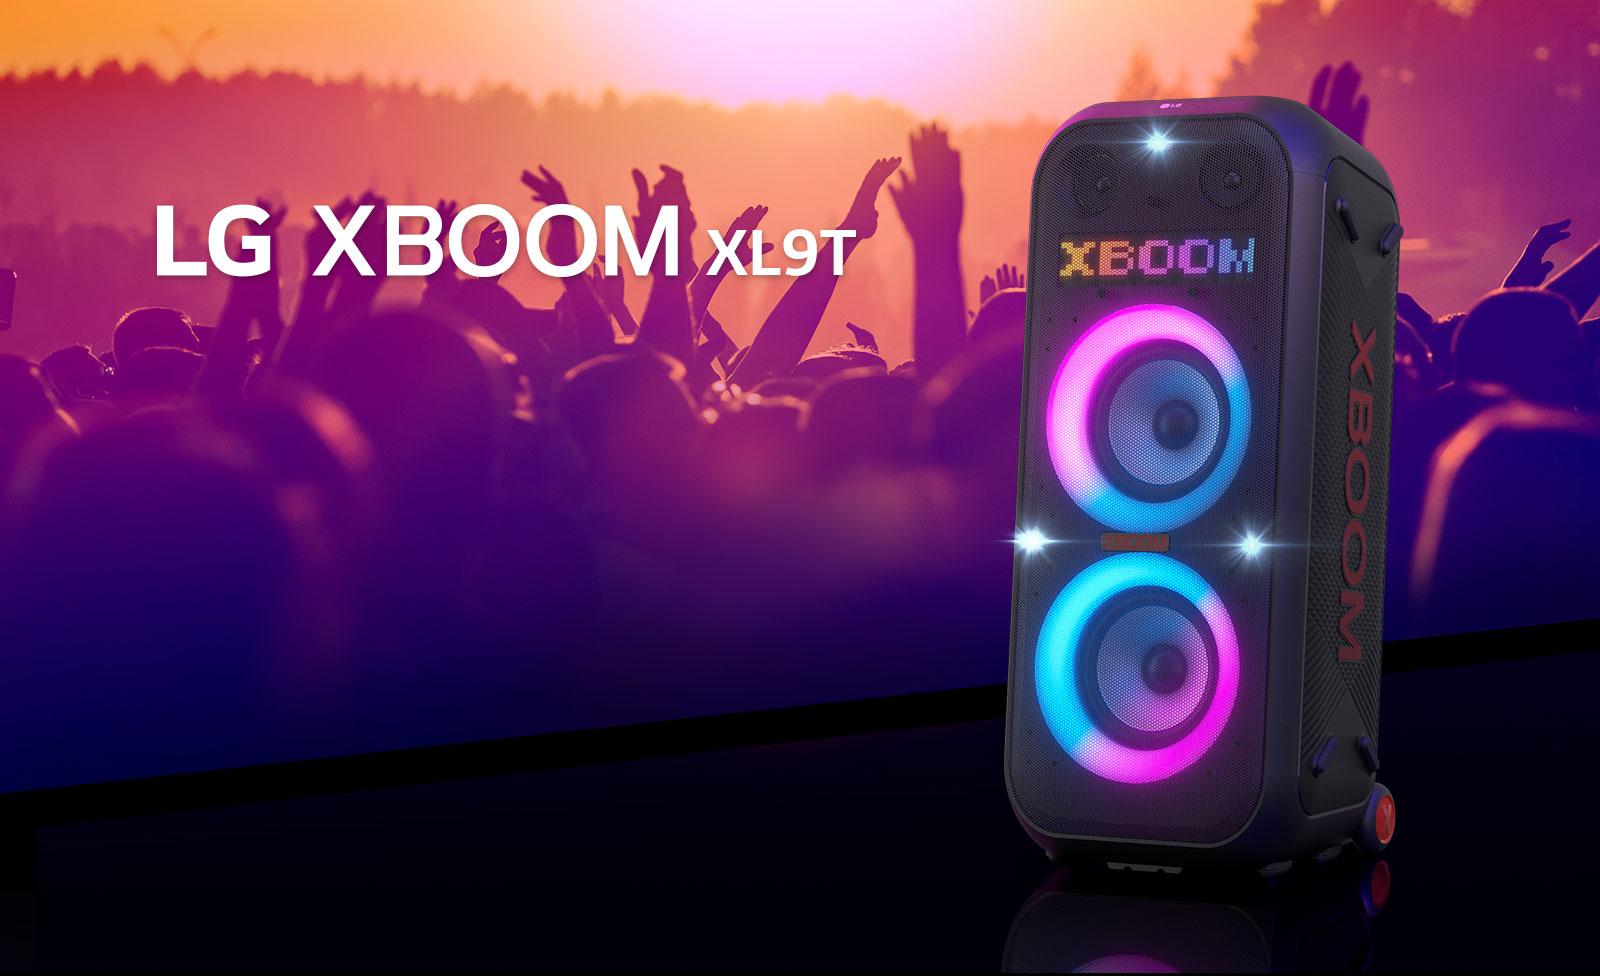 LG XBOOM XL9T je dijagonalno postavljen na površinu. Višebojna svjetla svijetle, a na zaslonu se prikazuje riječ „XBOOM”. Iza zvučnika, obrisi ljudi koji uživaju na zabavi.